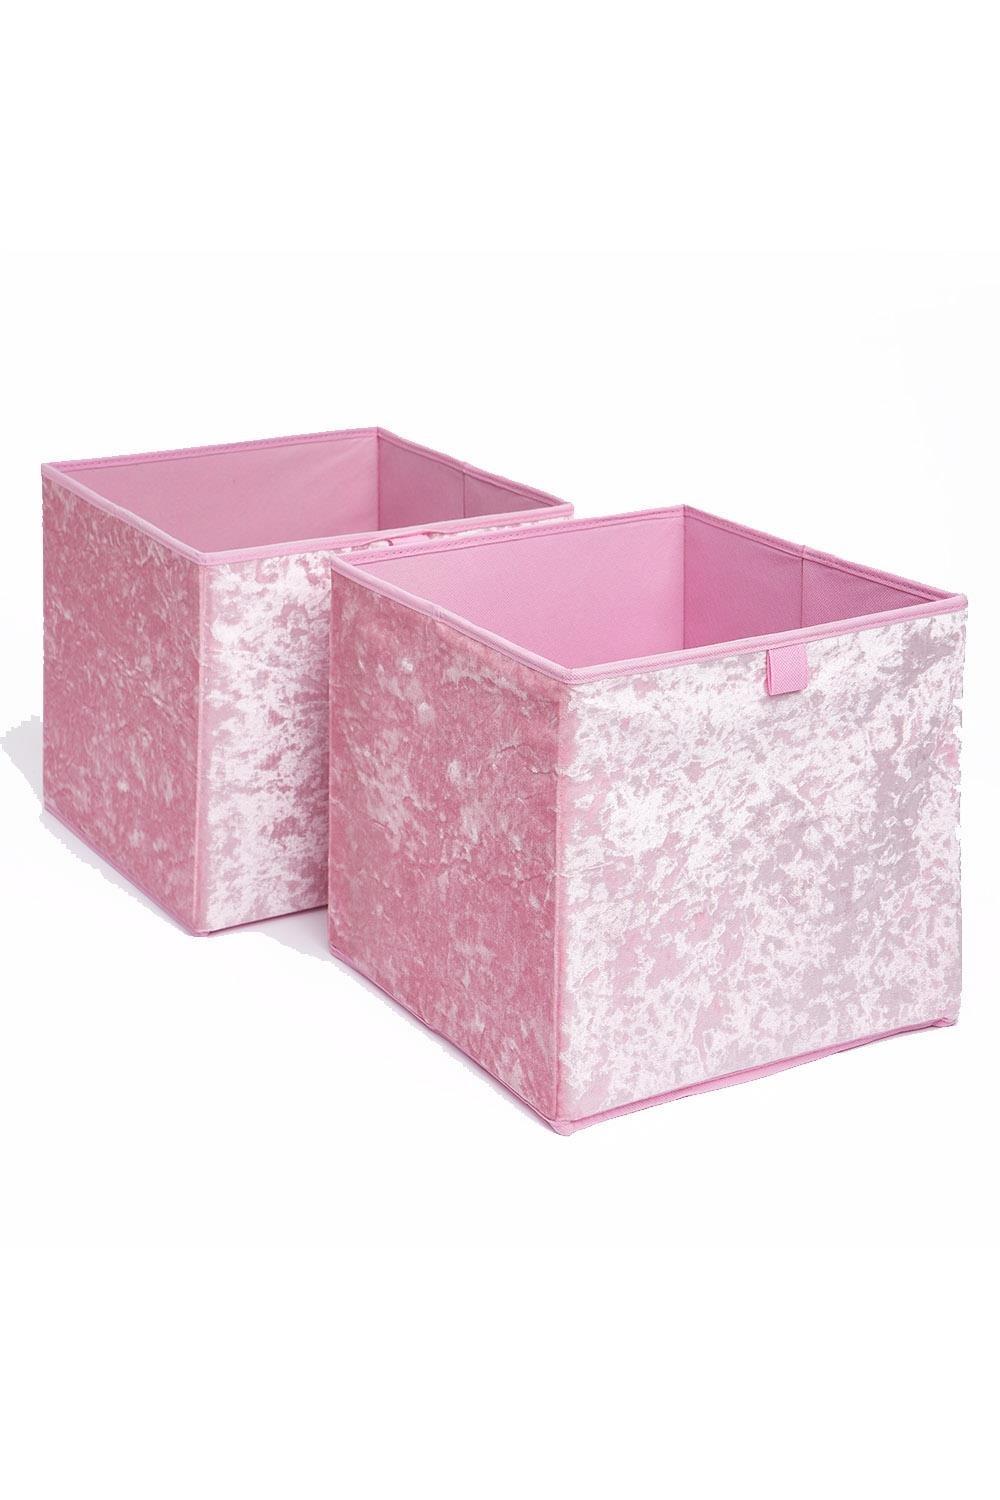 OHS Pair of 2 Crushed Velvet Stylish Folding Storage Box Cube|baby pink